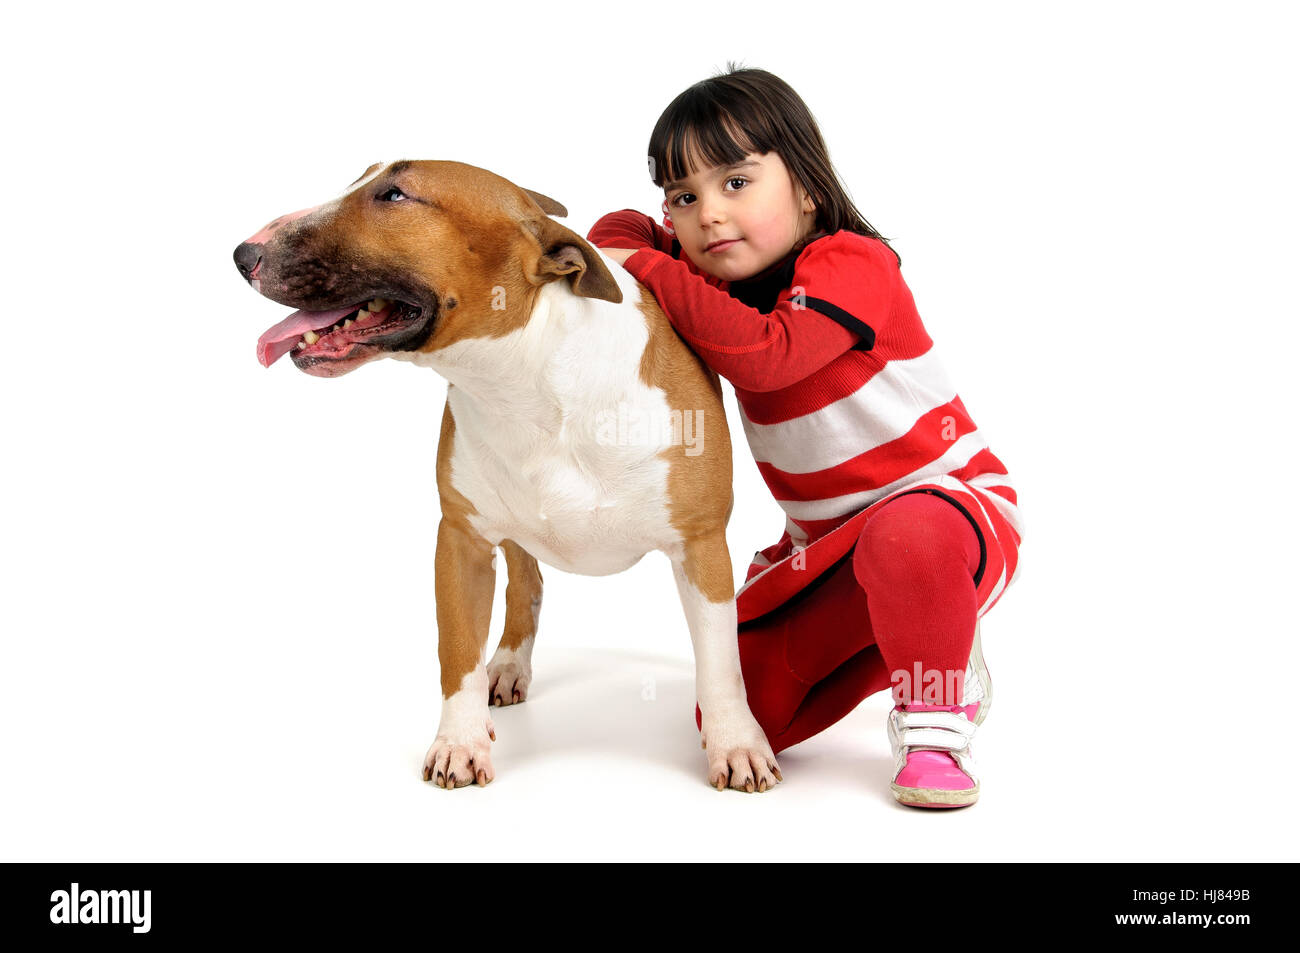 Amicizia, cane, canine, bambino, ragazza, ragazze, bambini, bambini, amici, Foto Stock